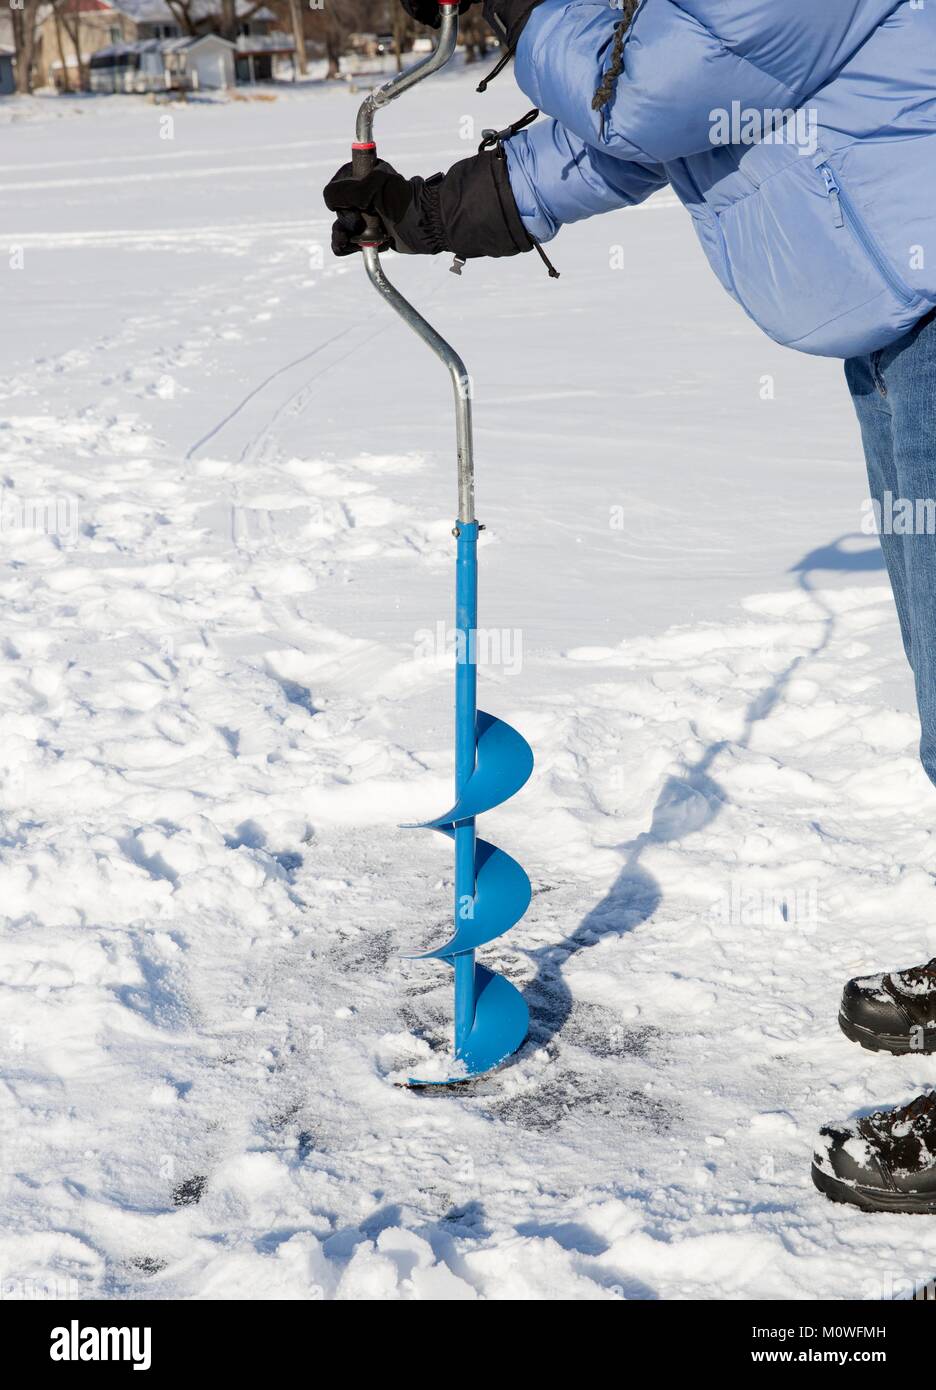 Une personne de percer un trou dans la glace d'un lac gelé à l'aide d'une glace auguer (une vis hélicoïdale à lames). Banque D'Images